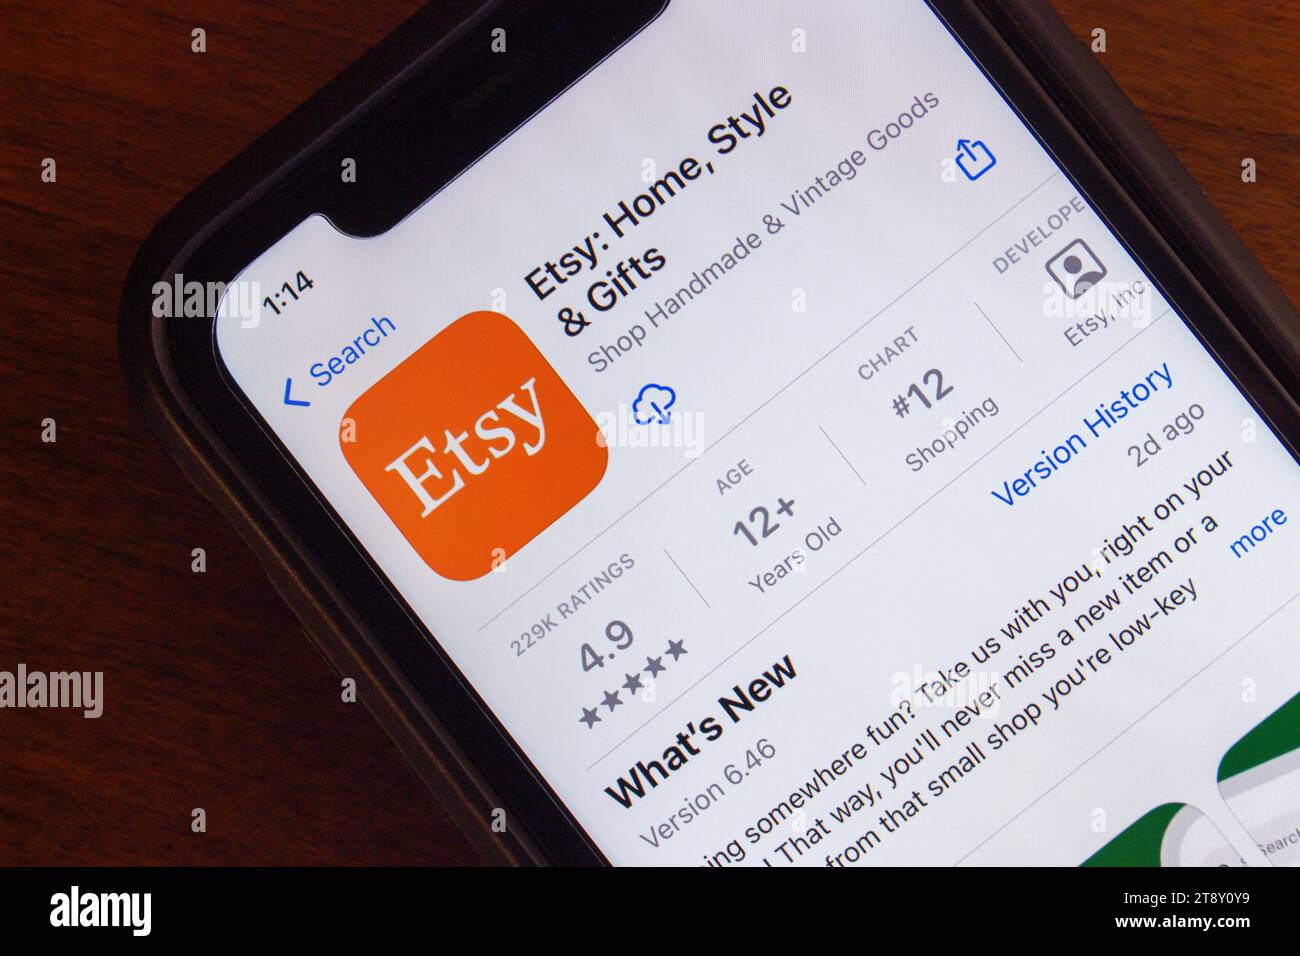 Application Etsy vue dans App Store sur l'écran de l'iPhone. Etsy, Inc. Est une société de commerce électronique américaine spécialisée dans les articles faits à la main ou vintage et les fournitures artisanales Banque D'Images